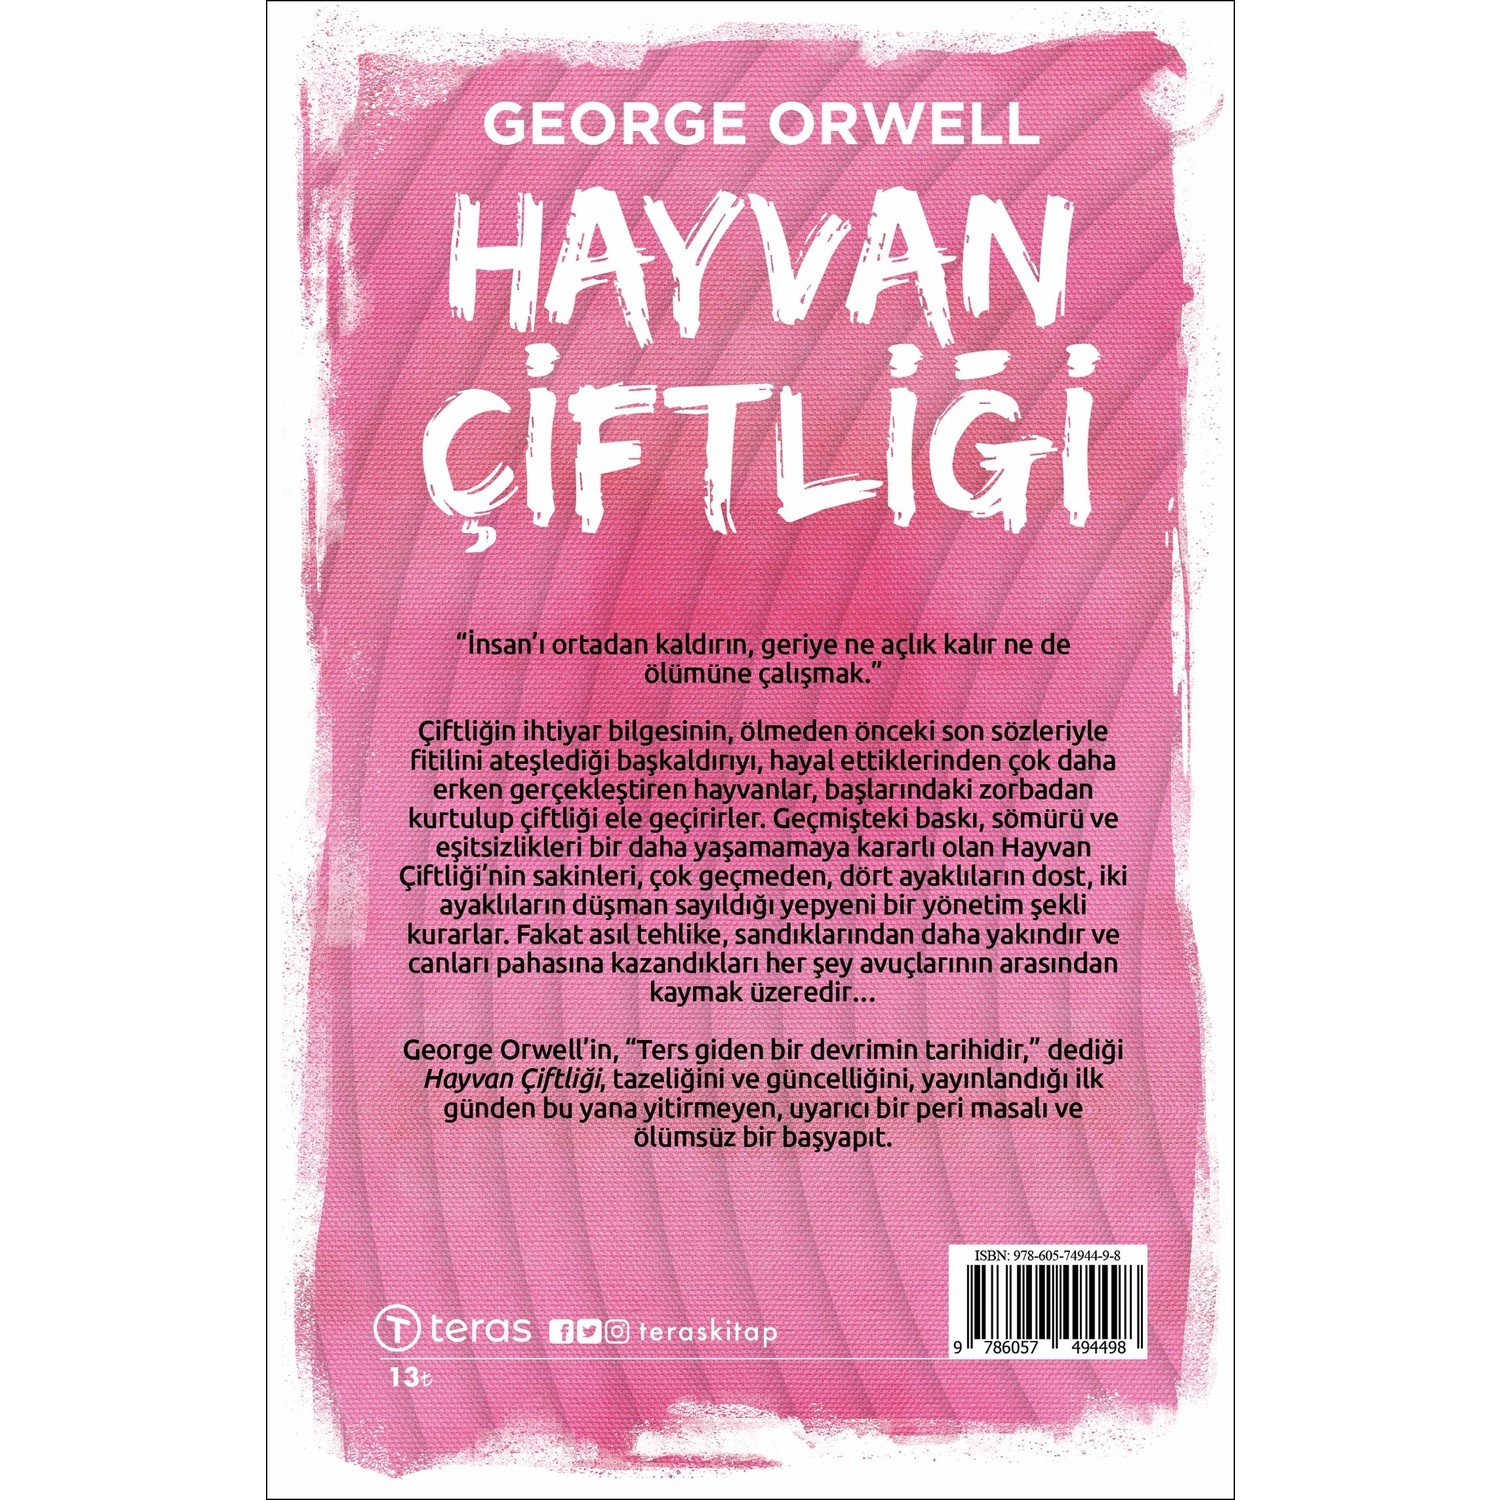 Hayvan Çiftliği - George Orwell Kitabı ve Fiyatı - Hepsiburada